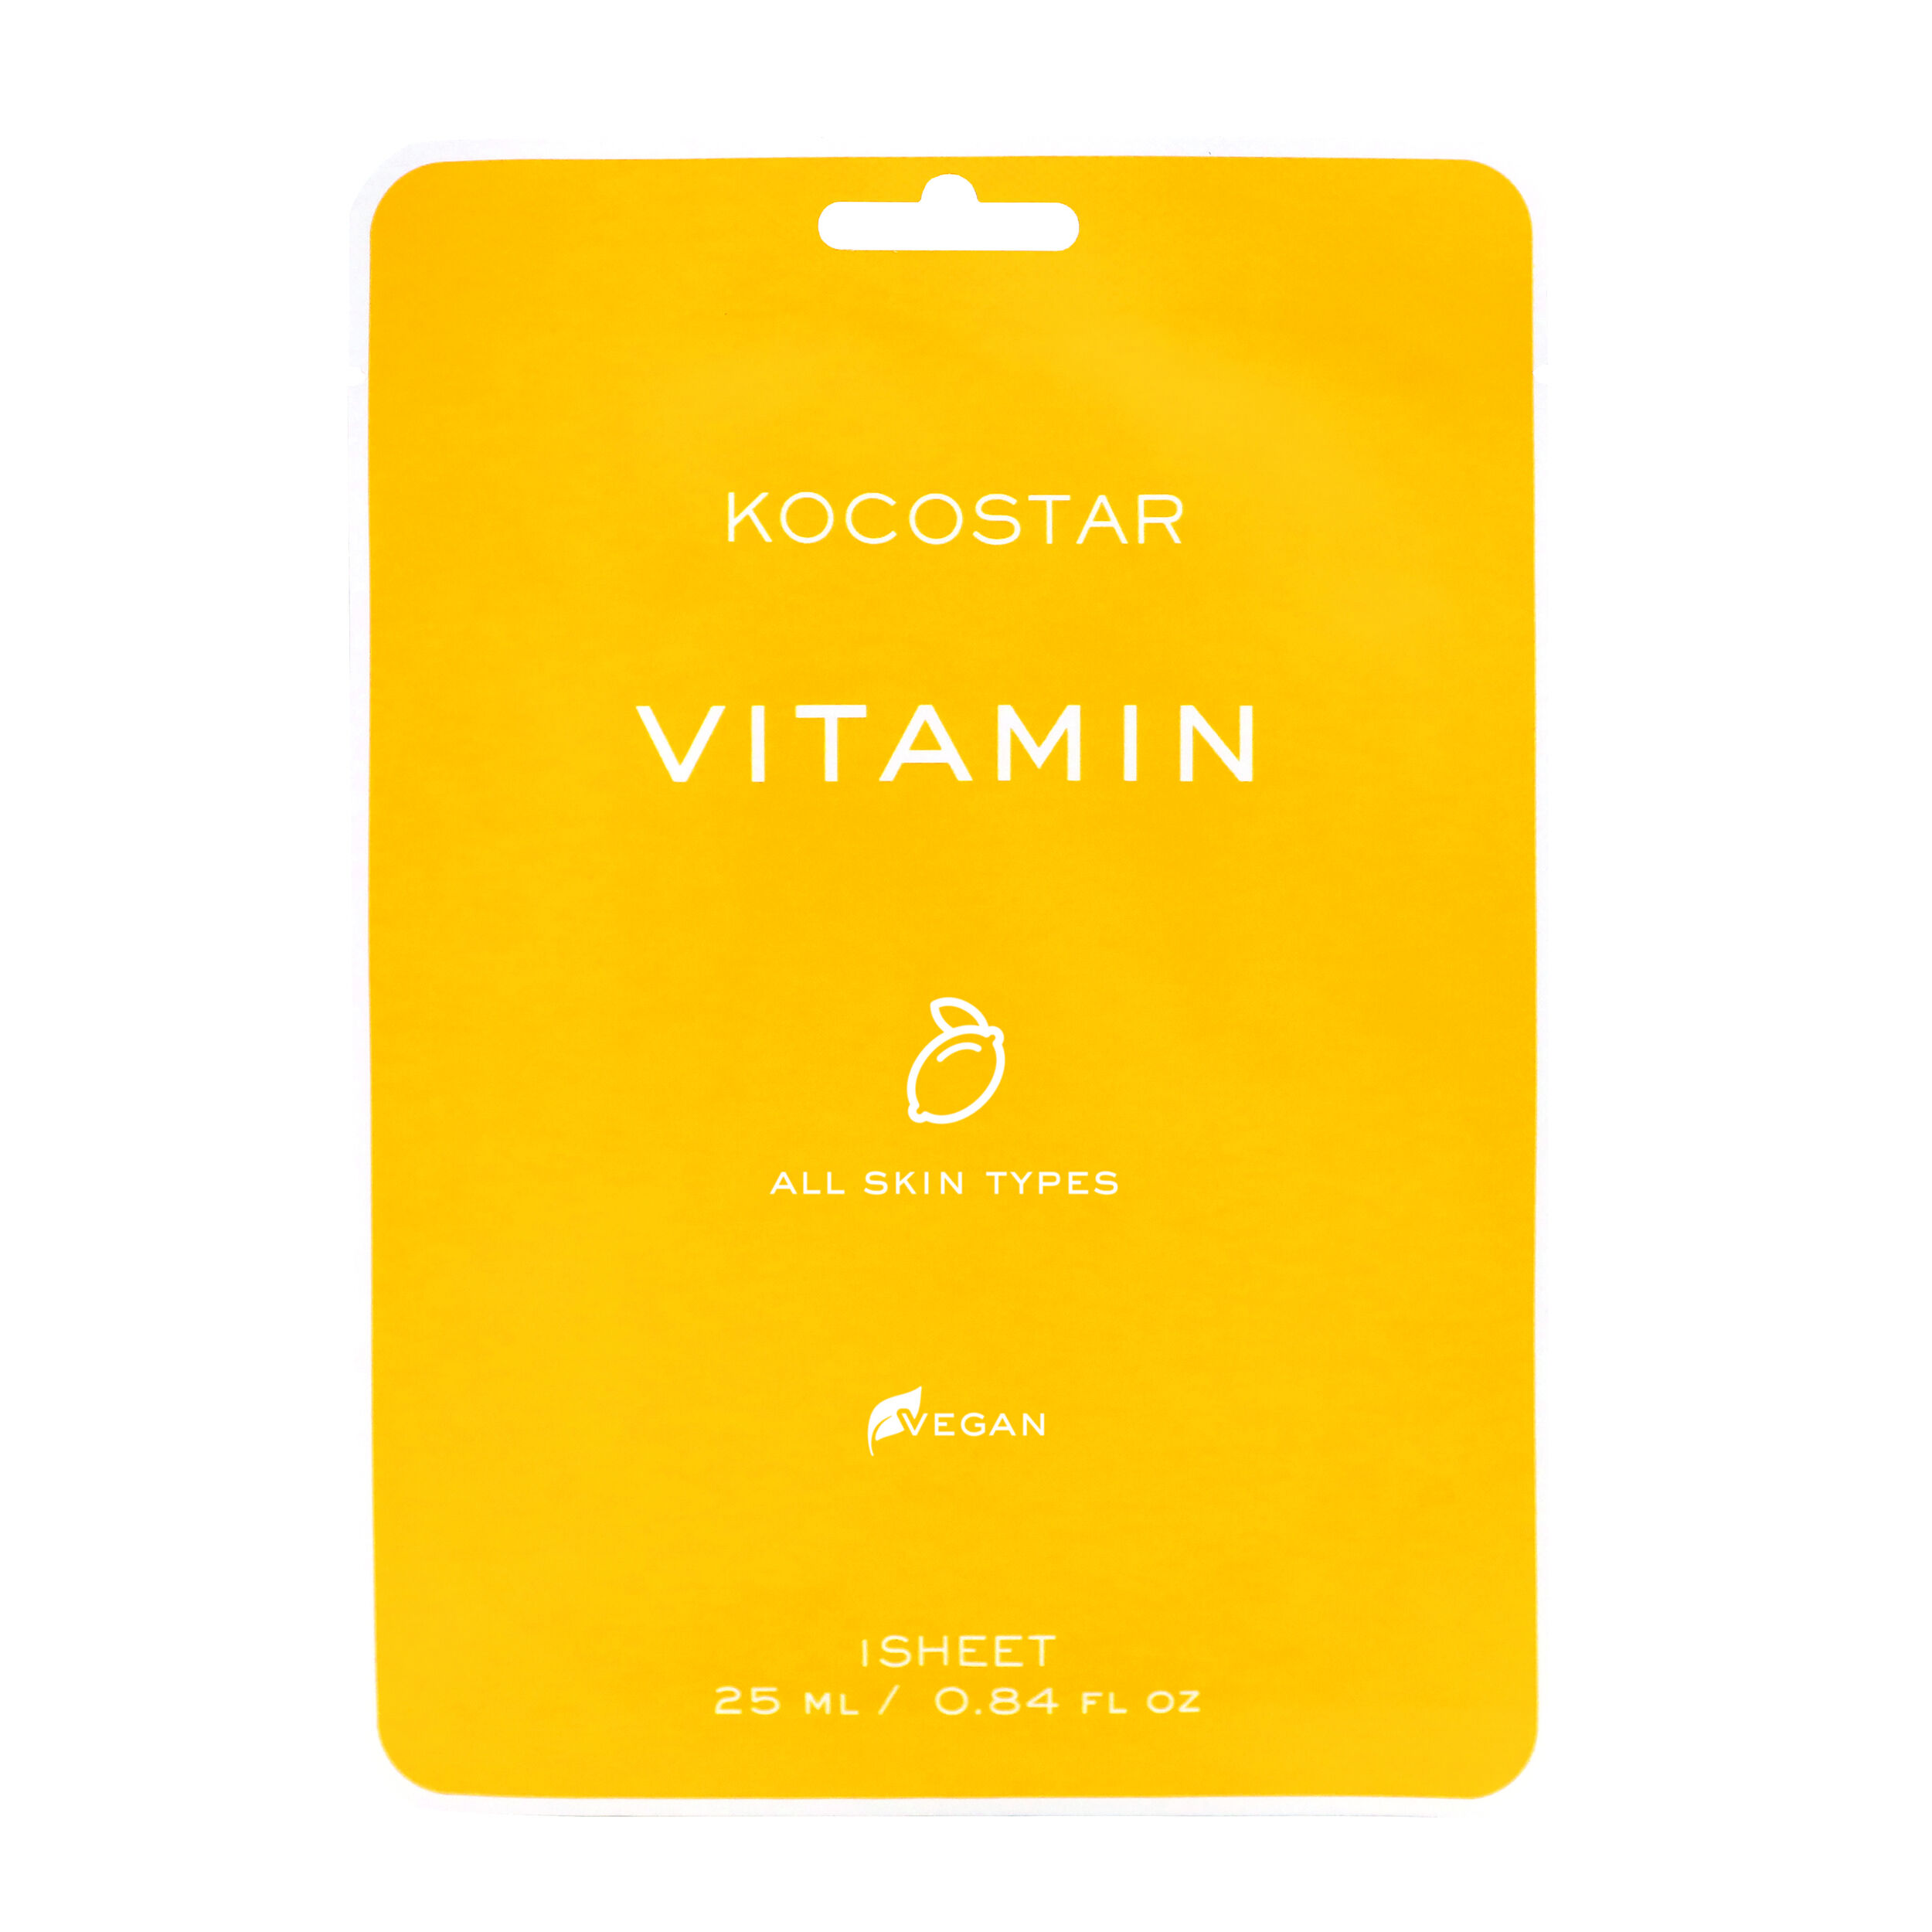 kocostar дерматропная маска для лица гнездо салан гана 25 мл Маска для лица Kocostar Vitamin, 25 мл